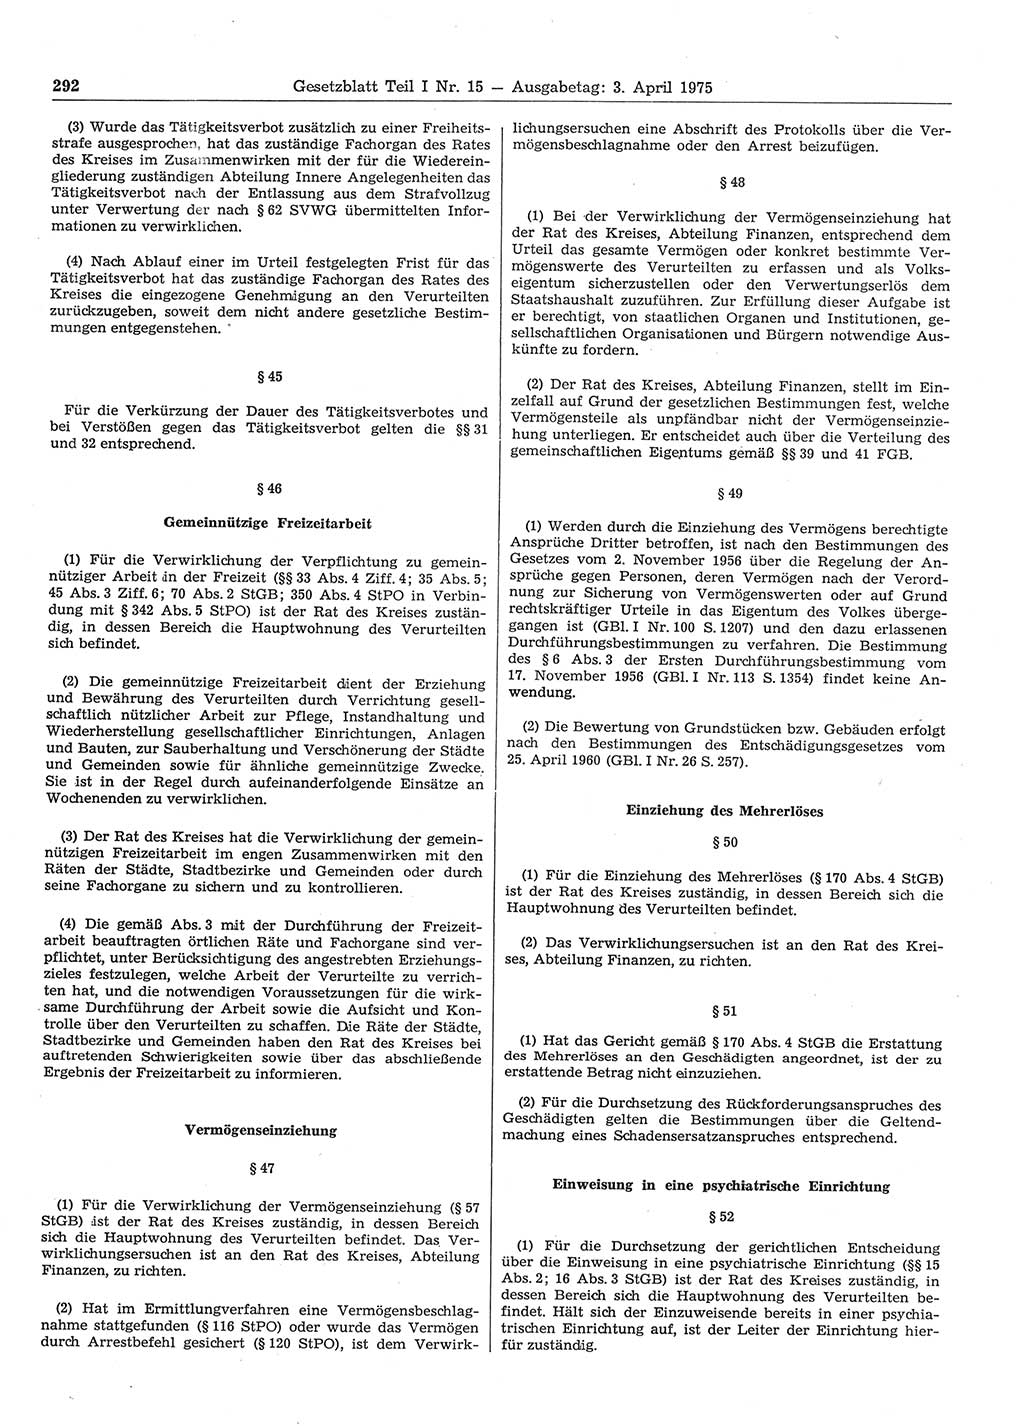 Gesetzblatt (GBl.) der Deutschen Demokratischen Republik (DDR) Teil Ⅰ 1975, Seite 292 (GBl. DDR Ⅰ 1975, S. 292)